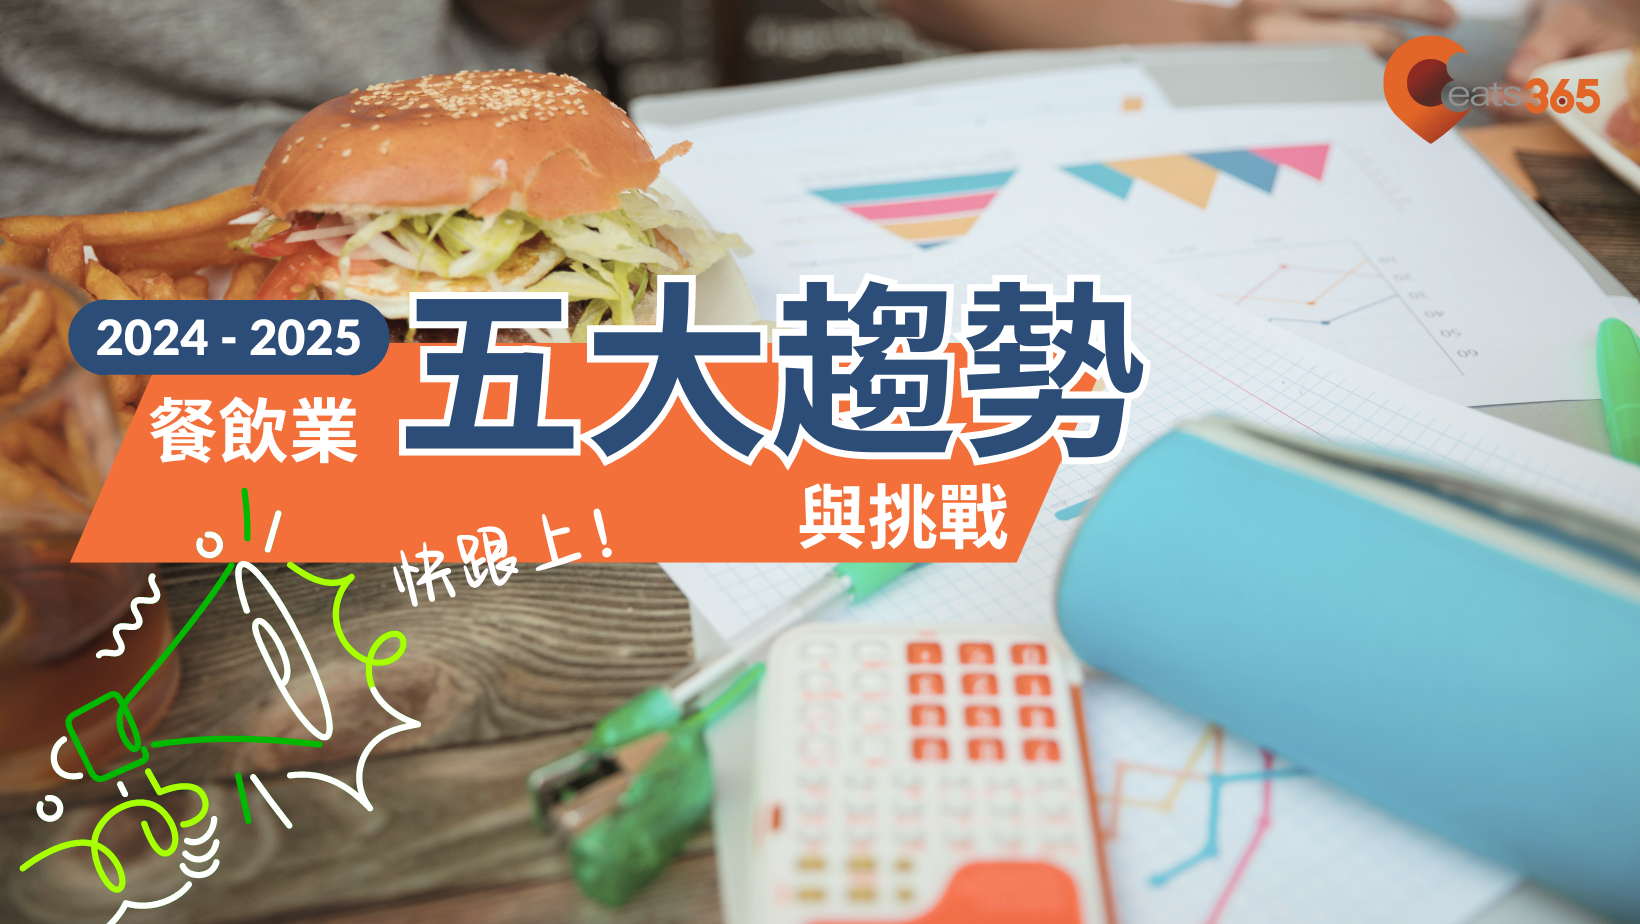 2024-2025台灣餐飲業趨勢、困境與發展方向